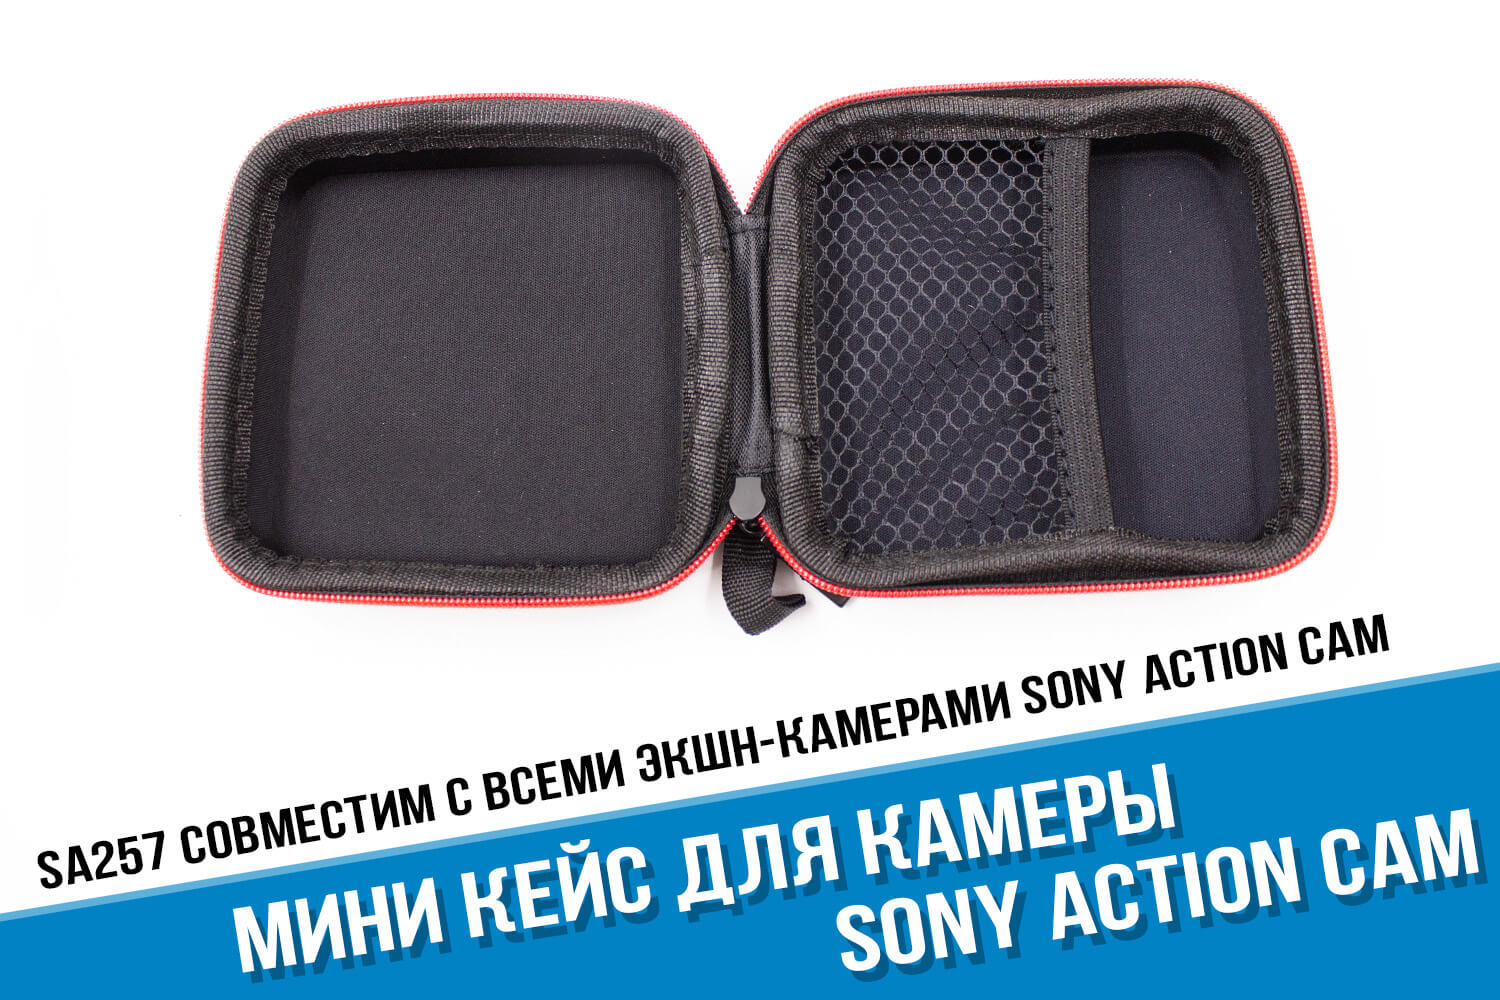 Мини кейс для камеры Sony Action Cam